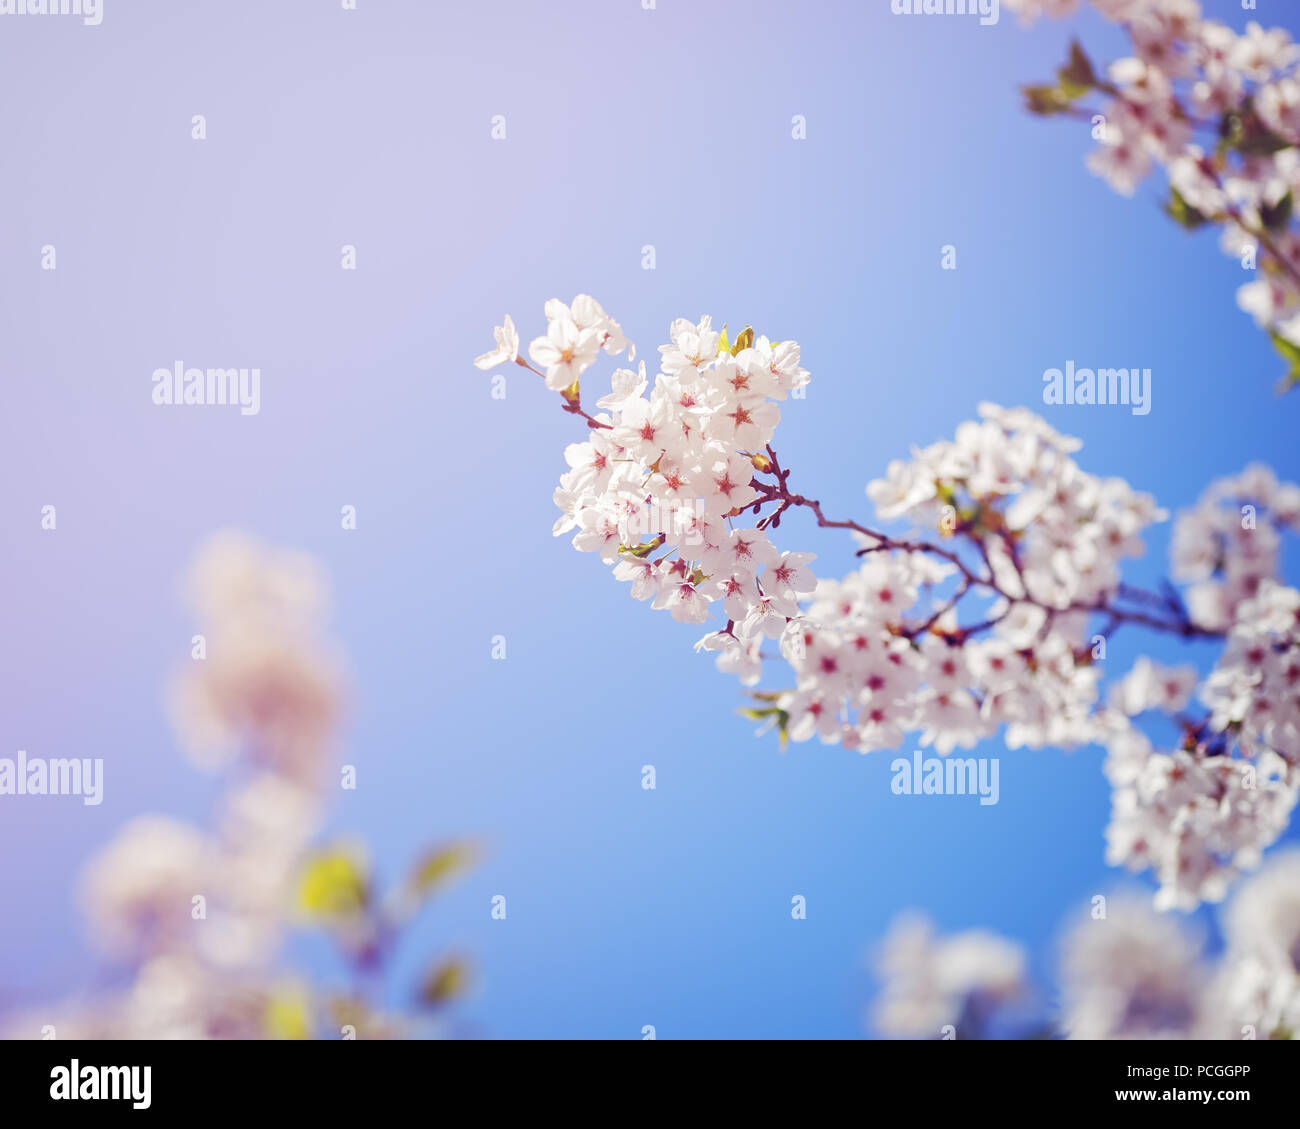 Karte mit schönen blühenden weißen sakura Blumen Baum auf blauen Himmel Hintergrund im Garten Park außerhalb, kopieren Platz für Text Stockfoto